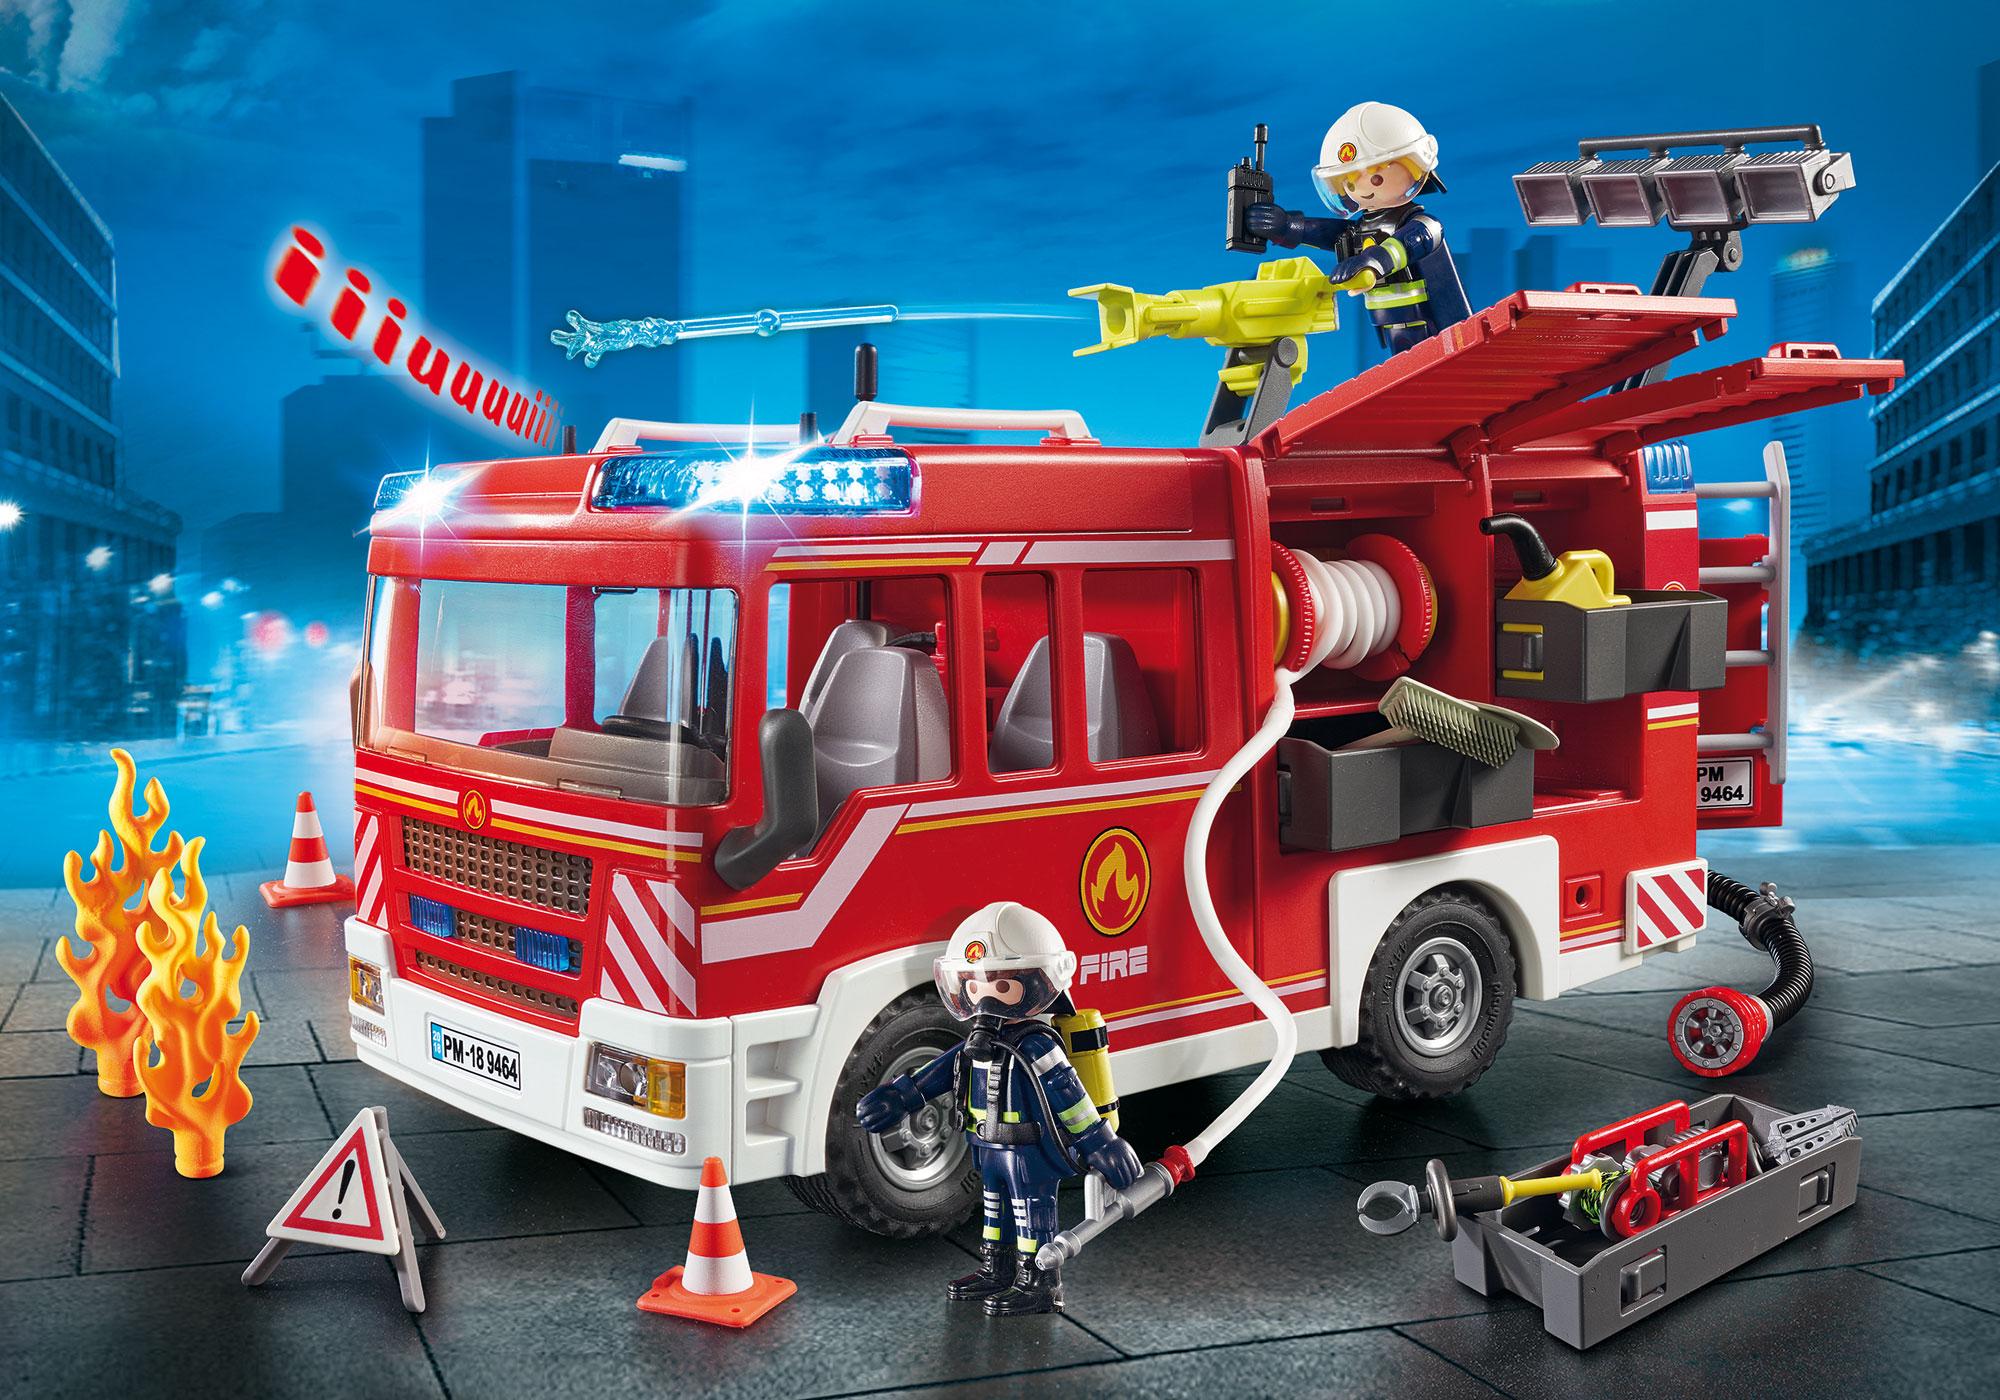 playmobil fireman set